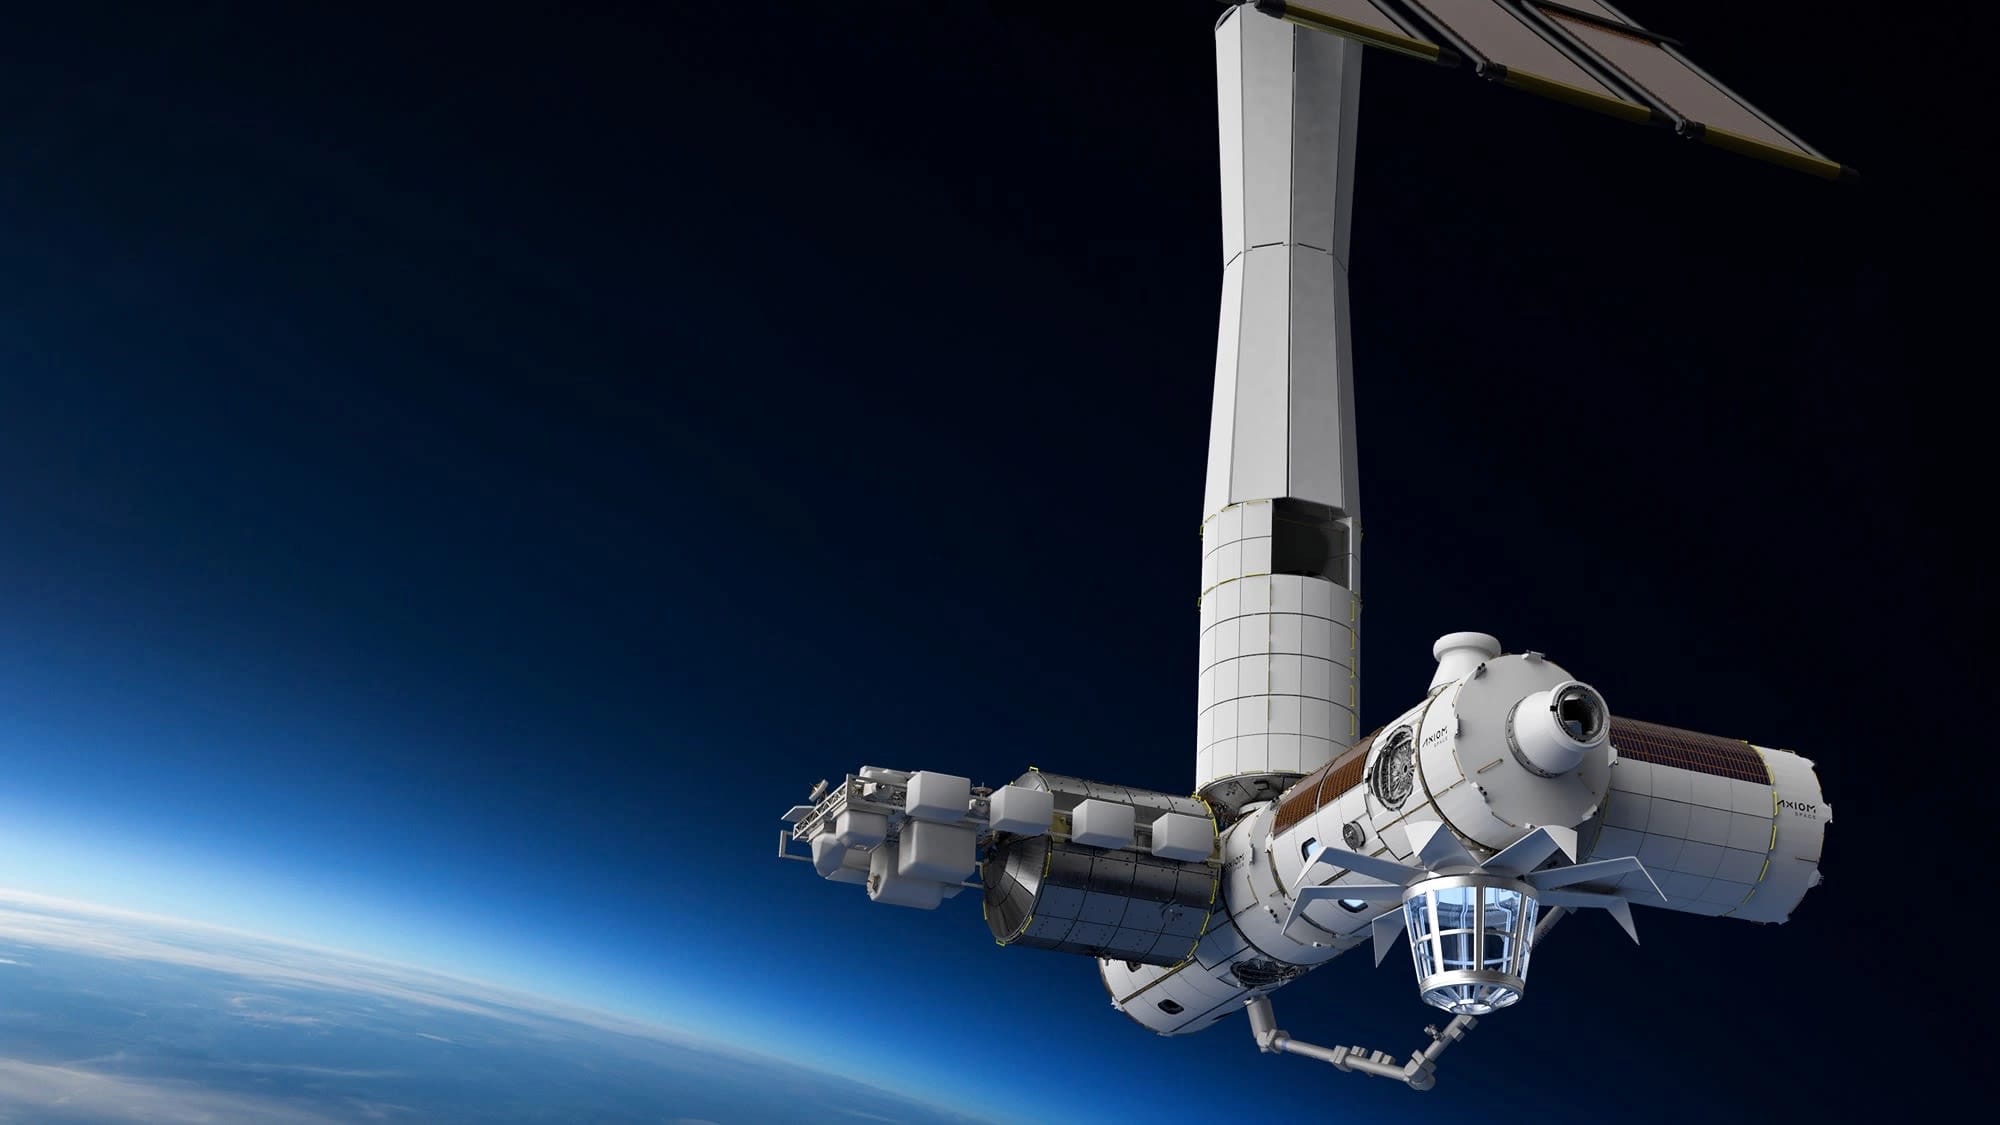 Компания Space Entertainment Enterprise планирует построить развлекательную площадку с киностудией и спортивной ареной в космосе к 2024 году. 